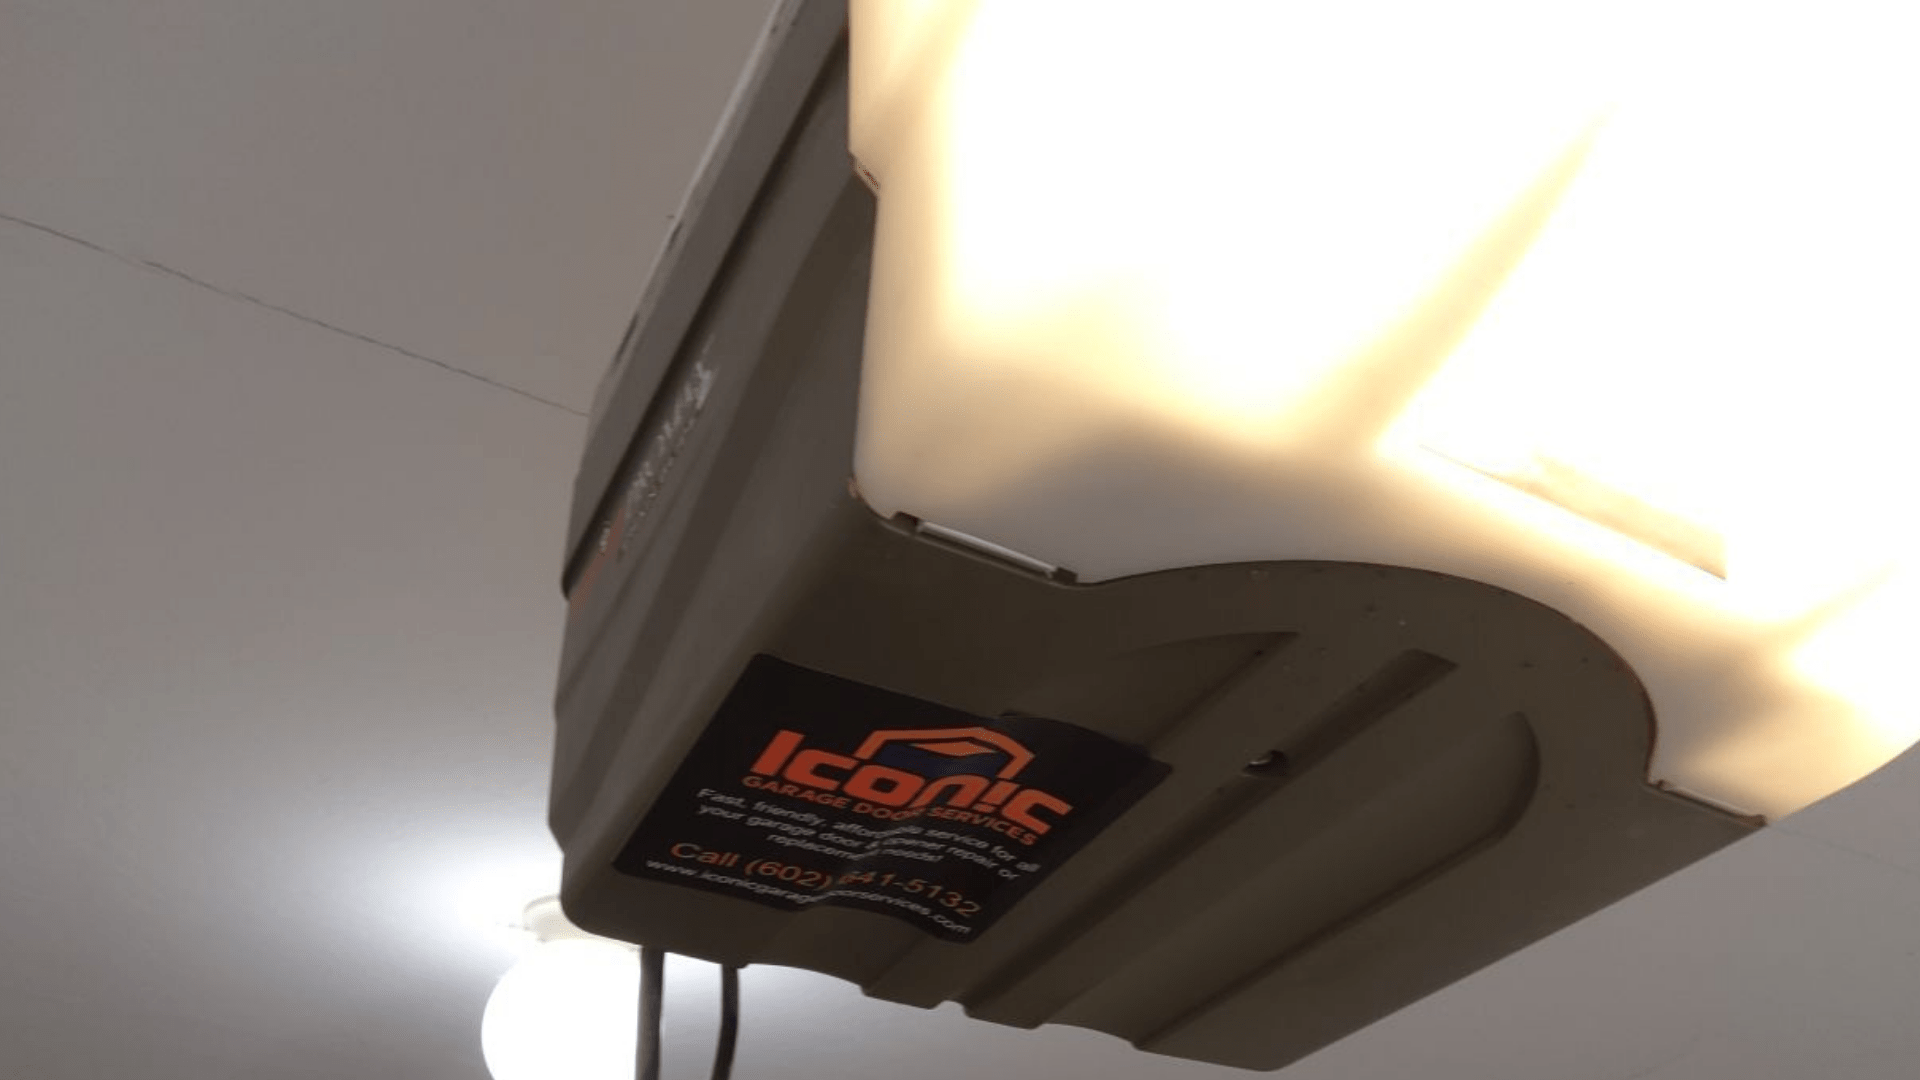 Garage door opener with Iconic Garage Door Services sticker